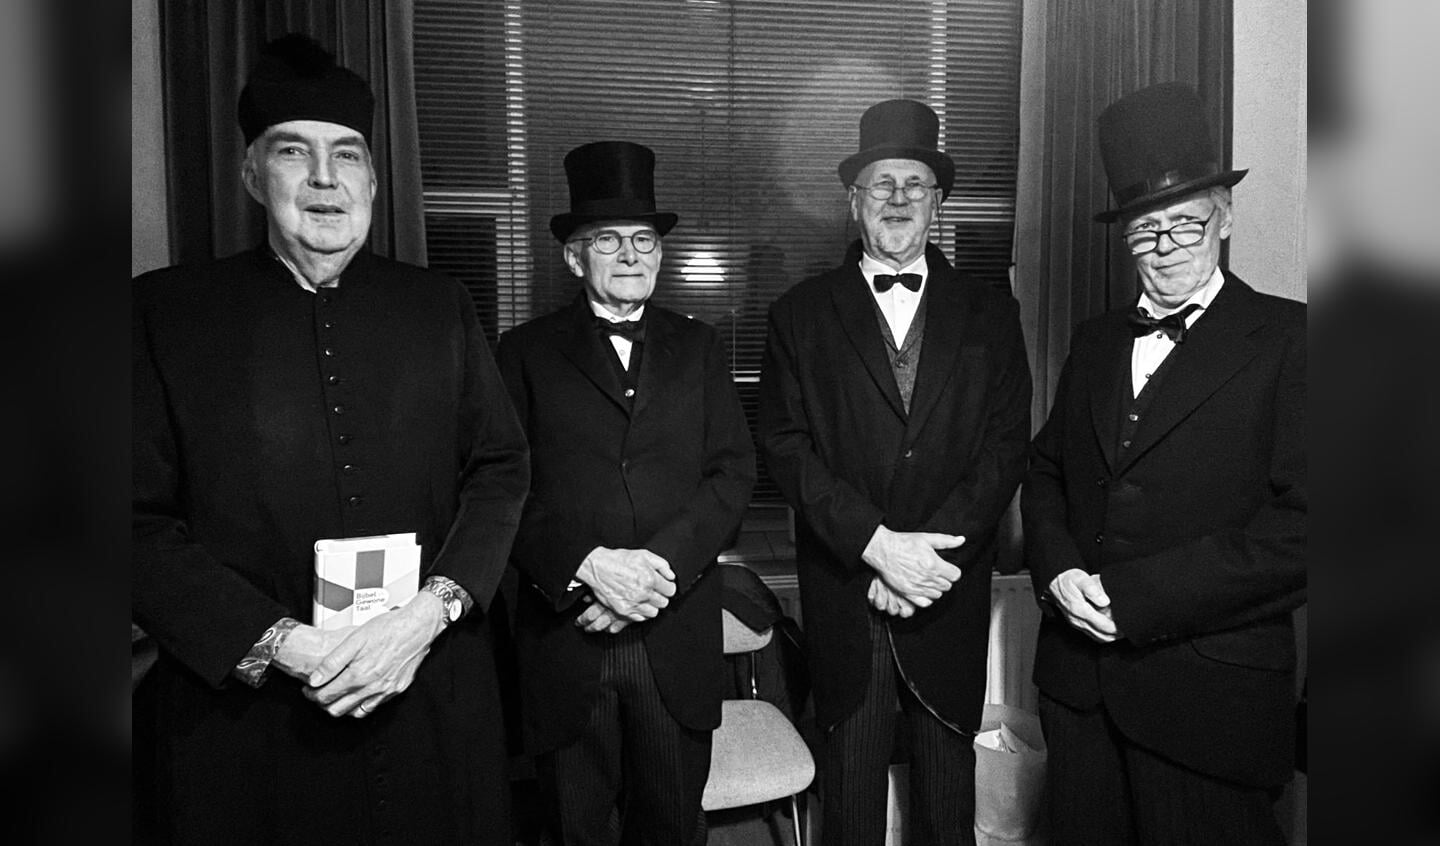 • 100 jaar terug in de tijd (van links naar rechts): de geestelijk adviseur, Gerard Vendrig, Piet van Kats en Harry van Rooijen.